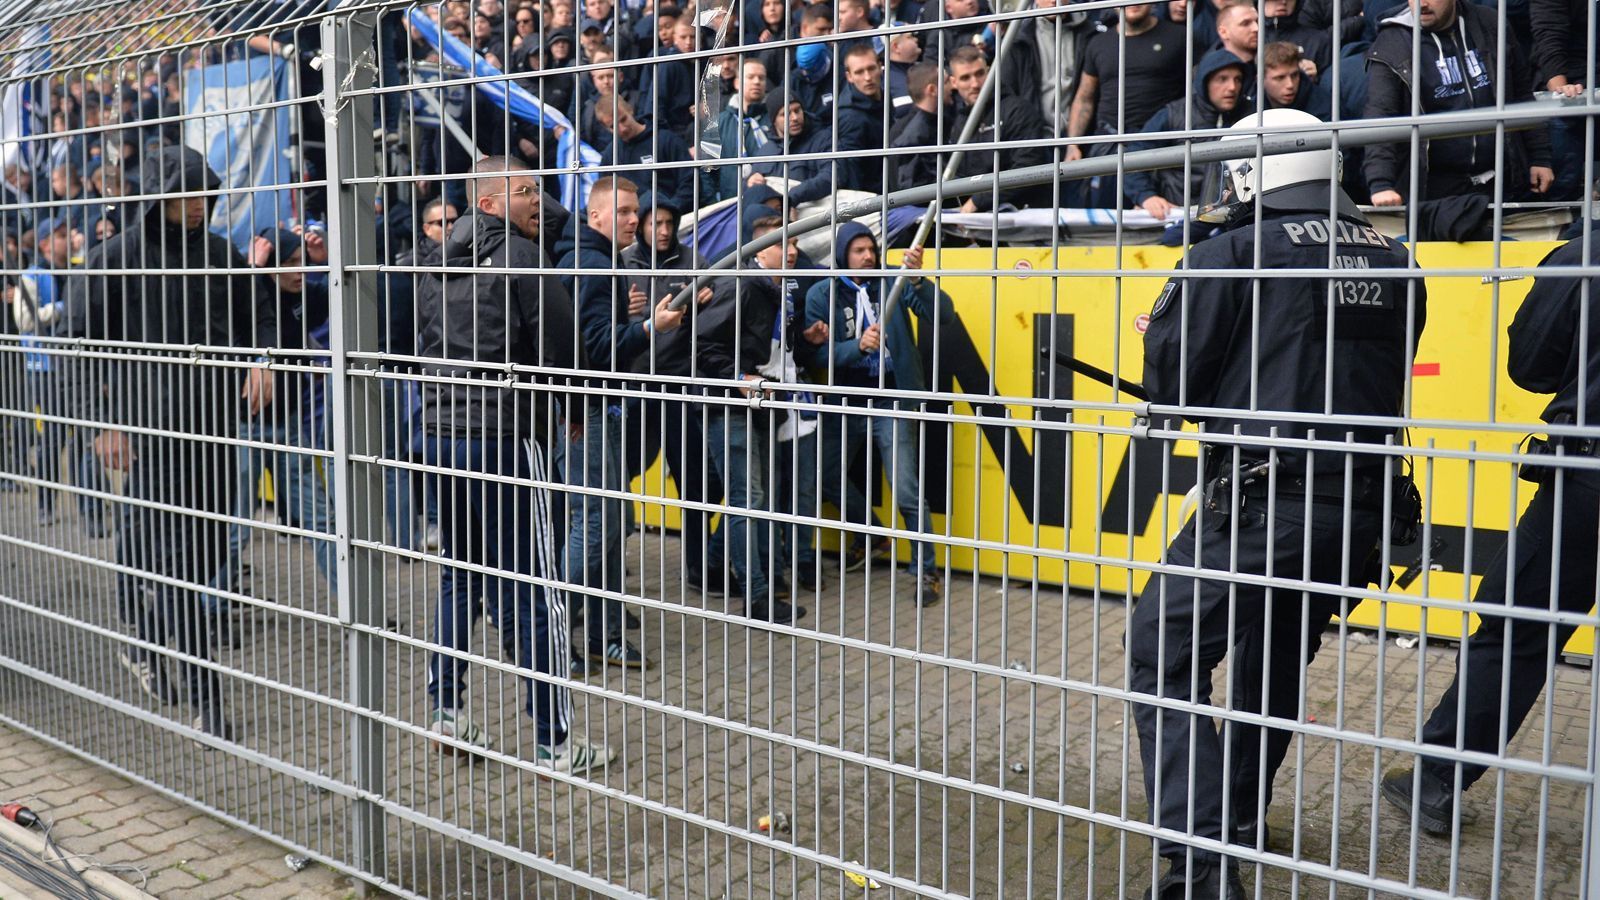 
                <strong>Ausschreitung im Hertha-Block bei Auswärtsspiel in Dortmund</strong><br>
                Einige Hertha-Fans springen in den Zwischenraum zwischen Fanblock und Rasen, gehen dann mit Stangen auf die Polizeikräfte los.
              